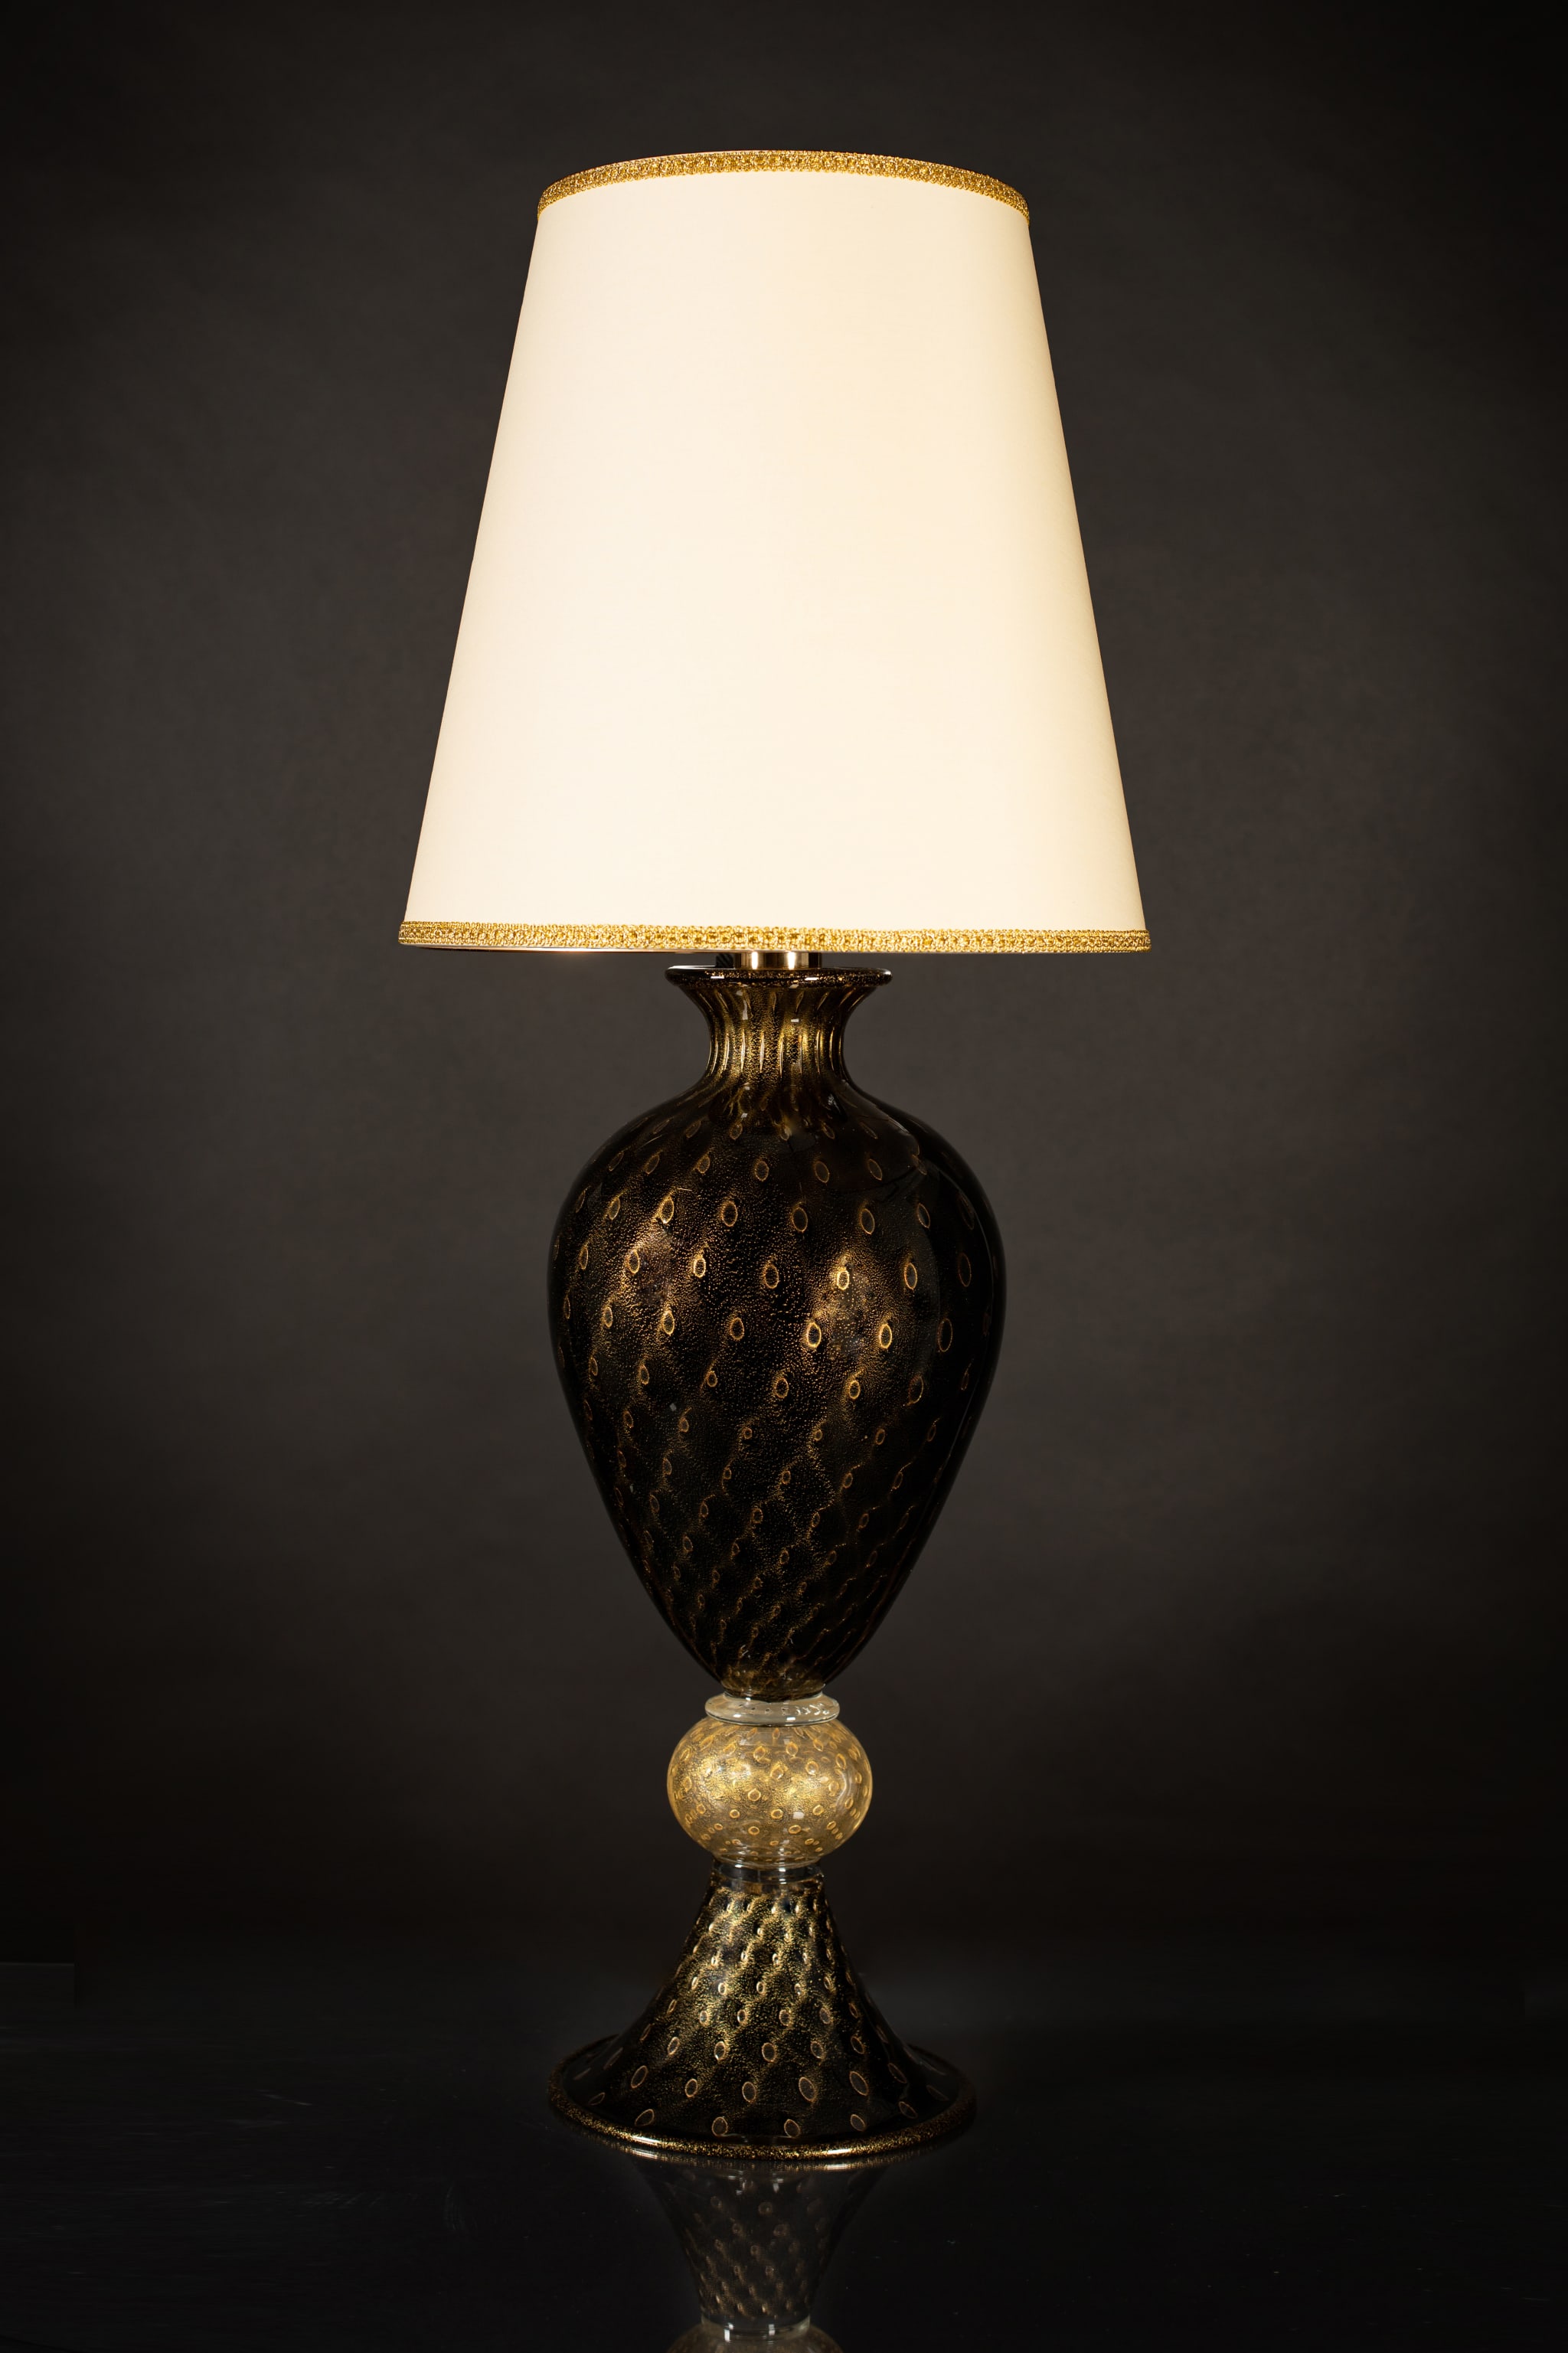 Große schwarz-goldene Tischlampe #1 - Alternative Ansicht 1